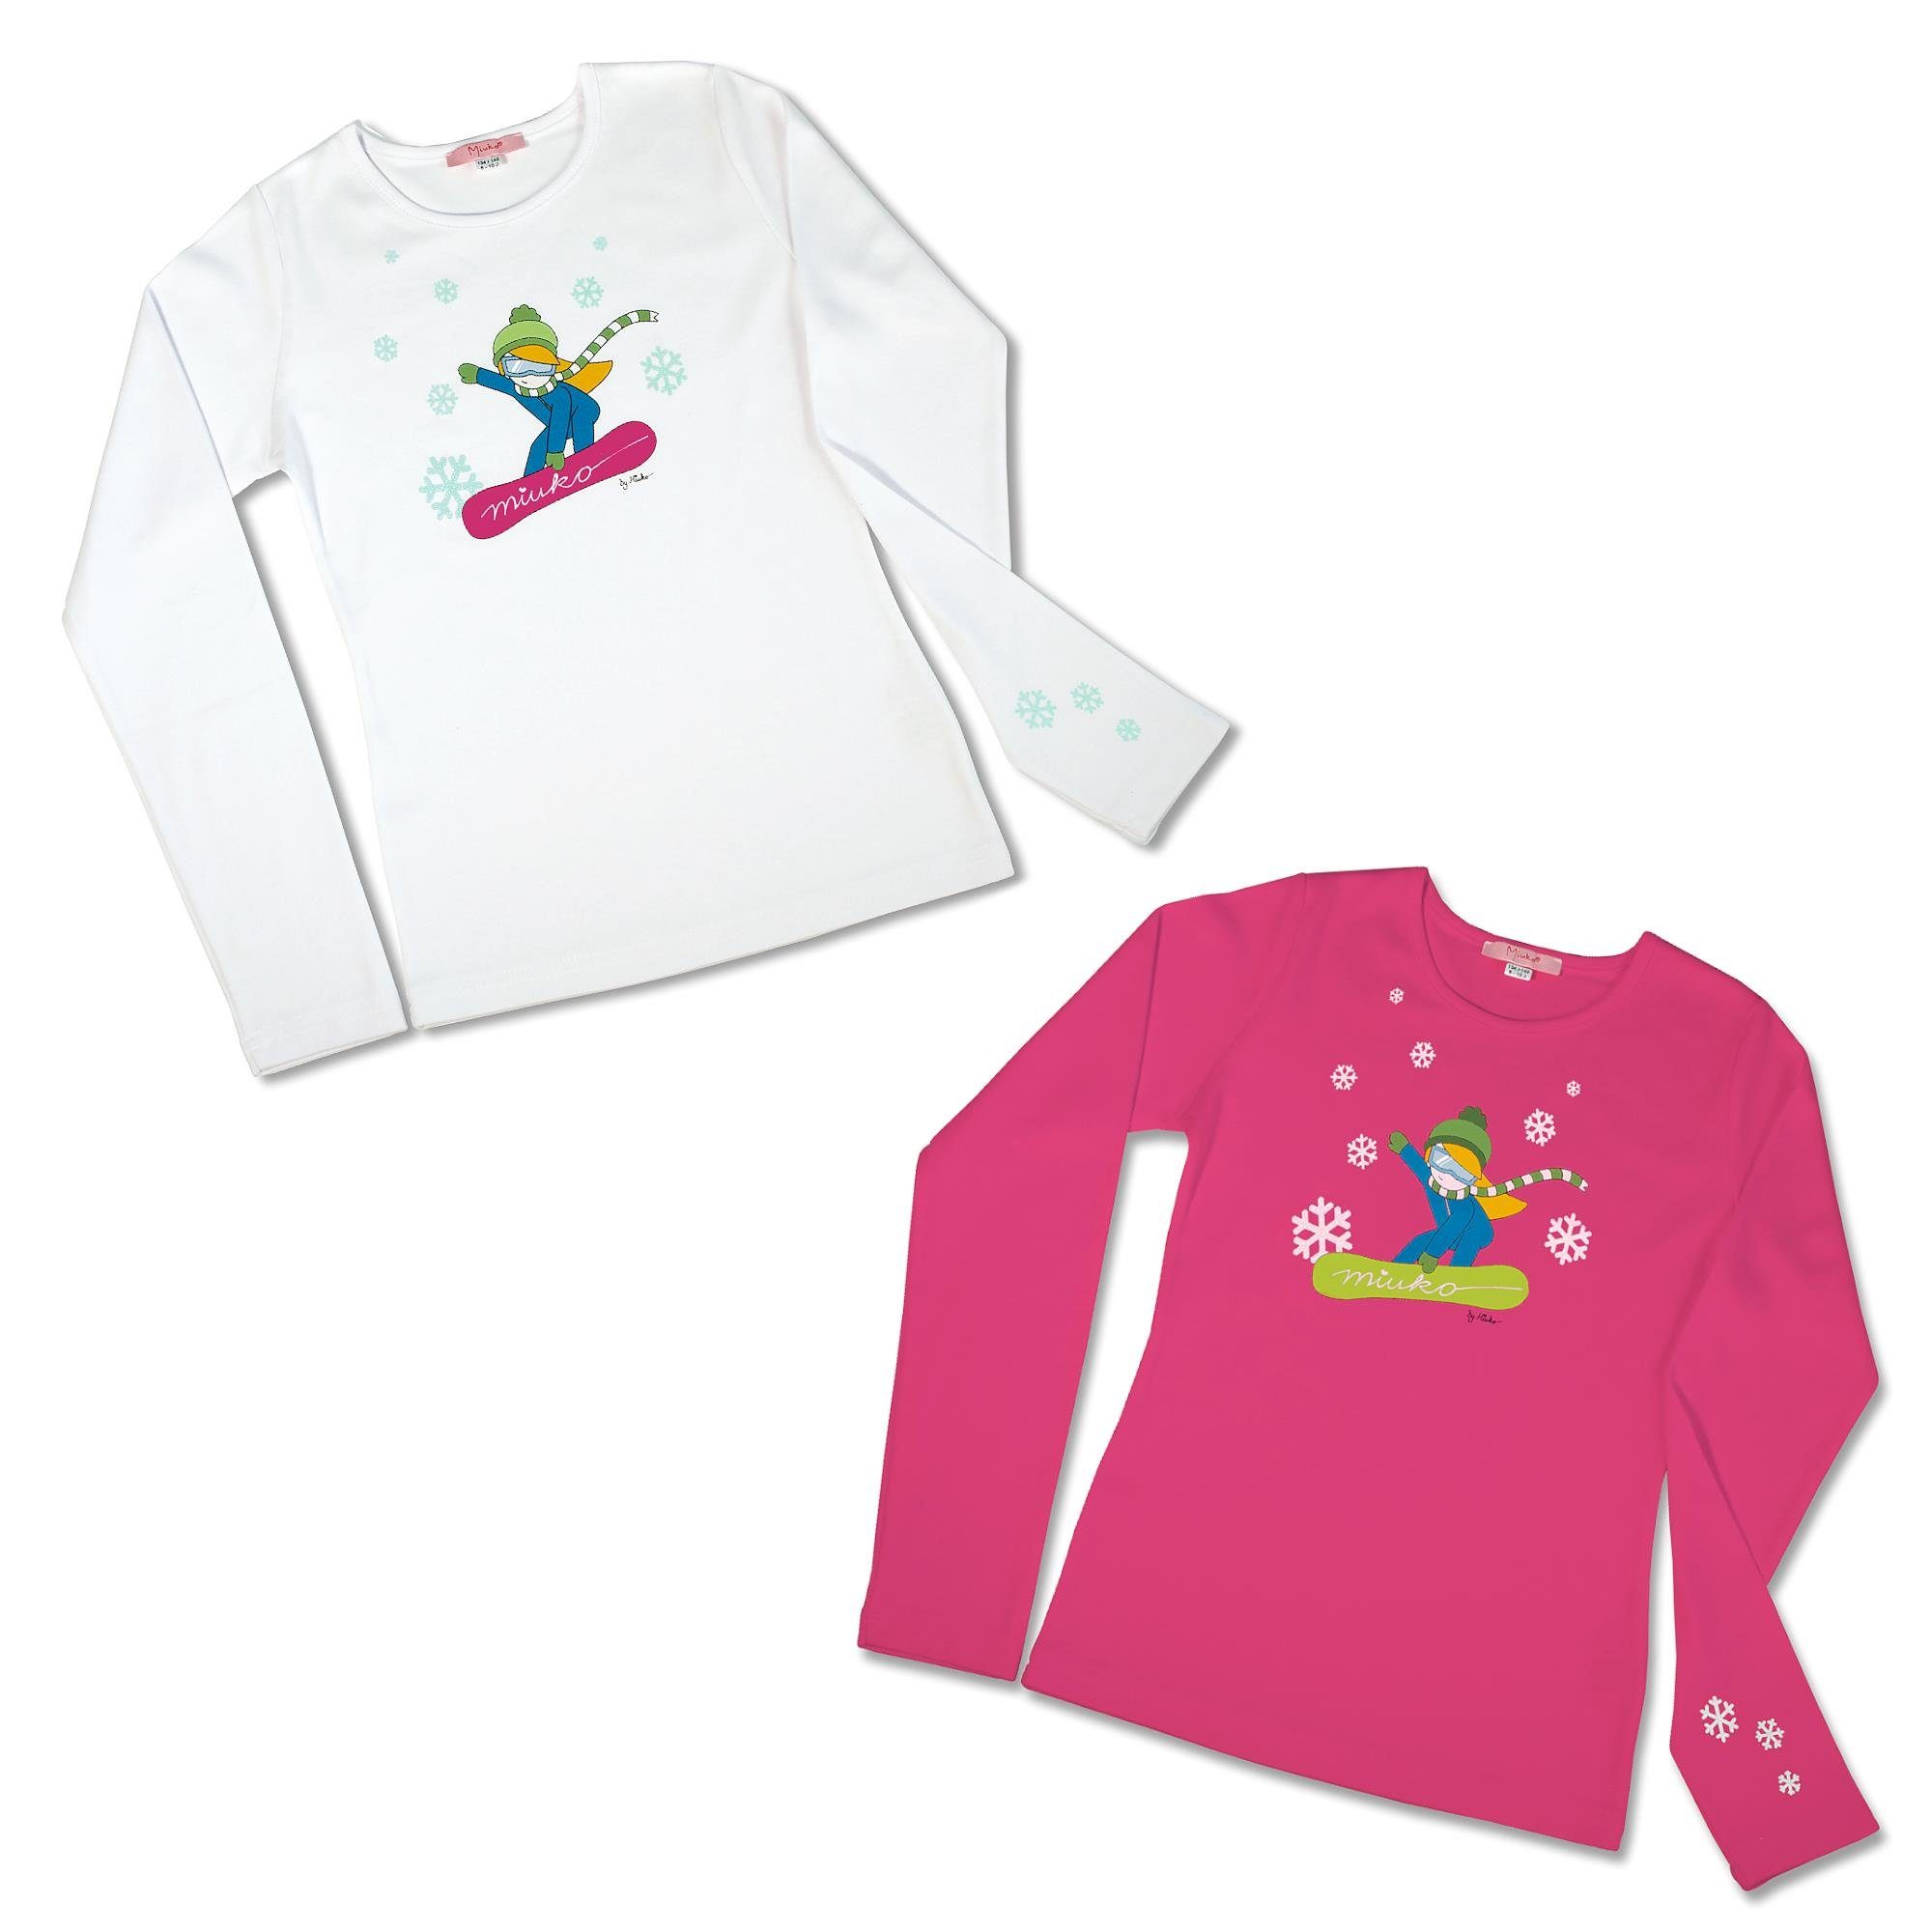 Miuko Langarmshirt für langärmlig, Mädchen pink, 100% Snowboarderin 158 122 134 164 128 weiß 140 Baumwolle 146 oder 152 rosa Motiv T-Shirt